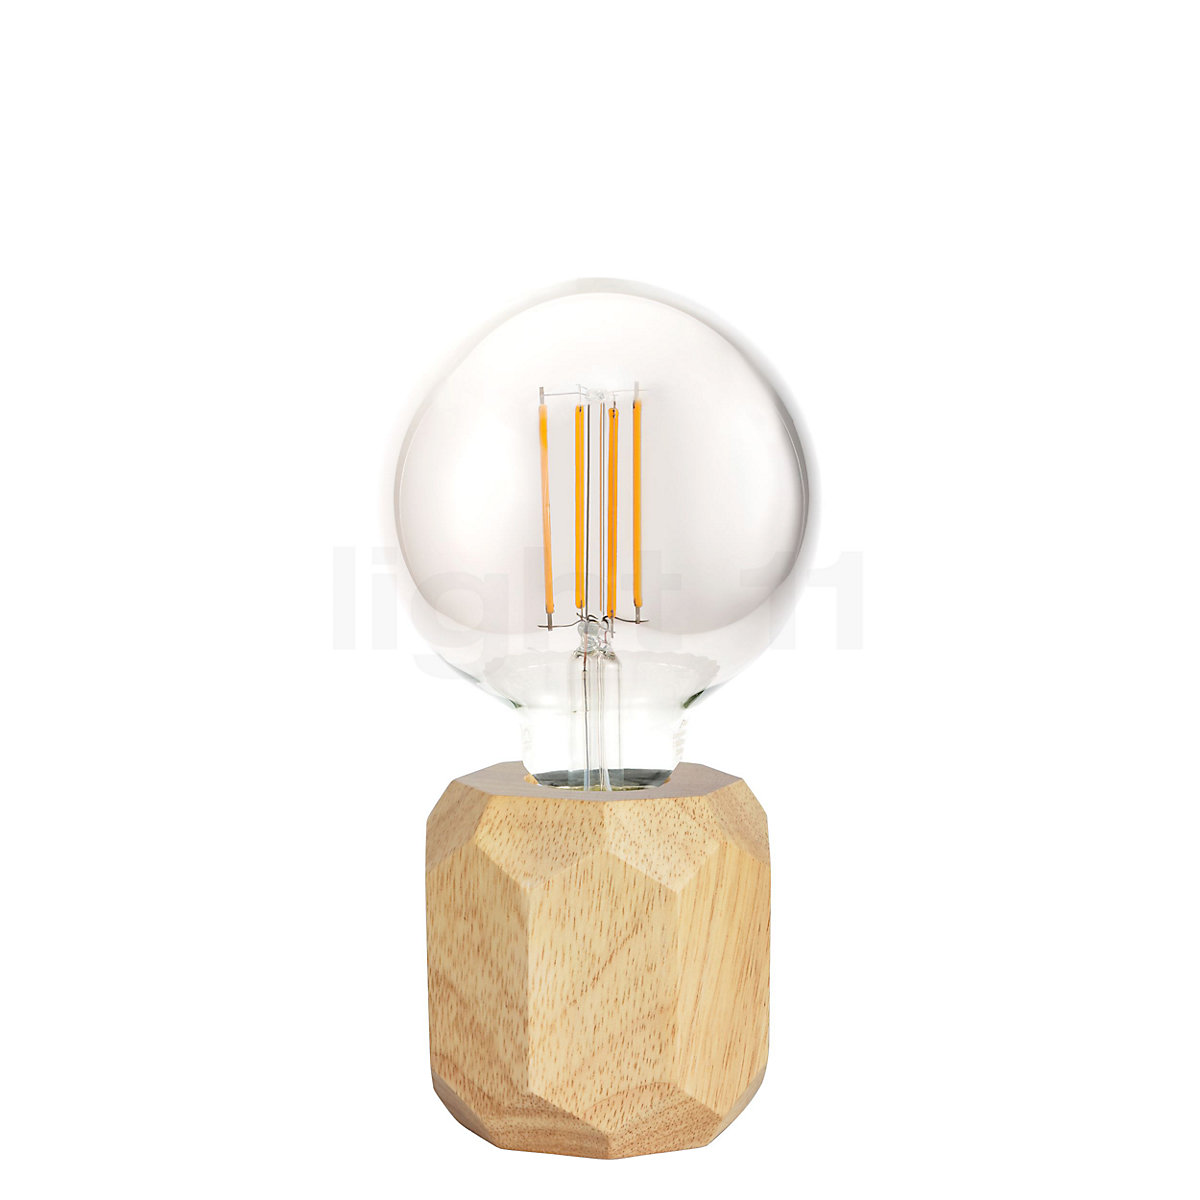 Verbonden ik ben gelukkig Leeuw Buy Pauleen Woody Sparkle Table Lamp at light11.eu